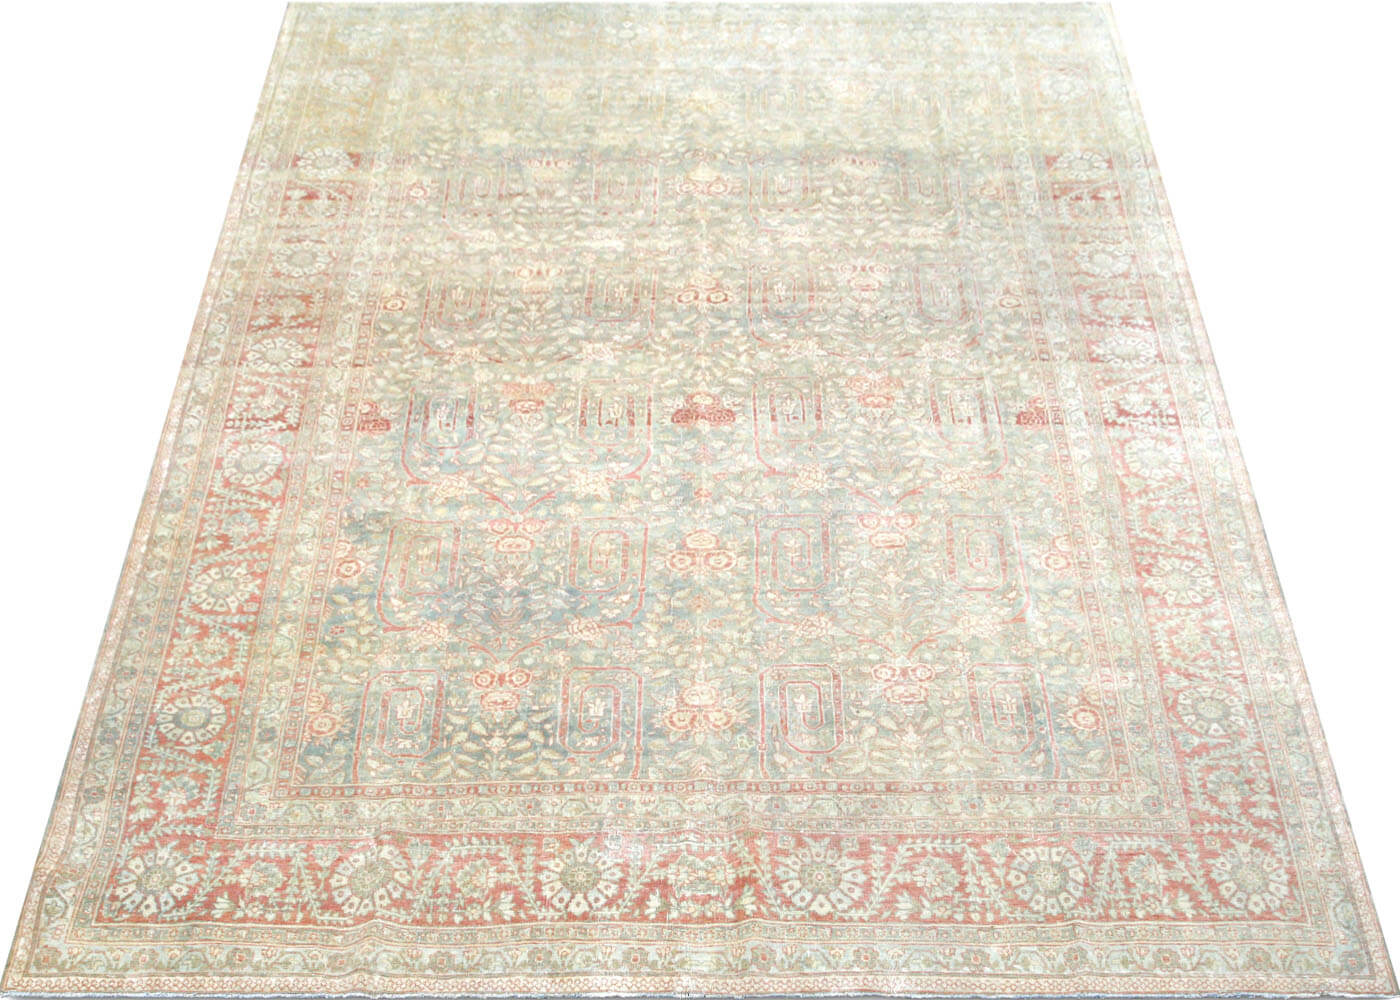 Semi Antique Persian Bidjar Rug - 8'4" x 11'7"